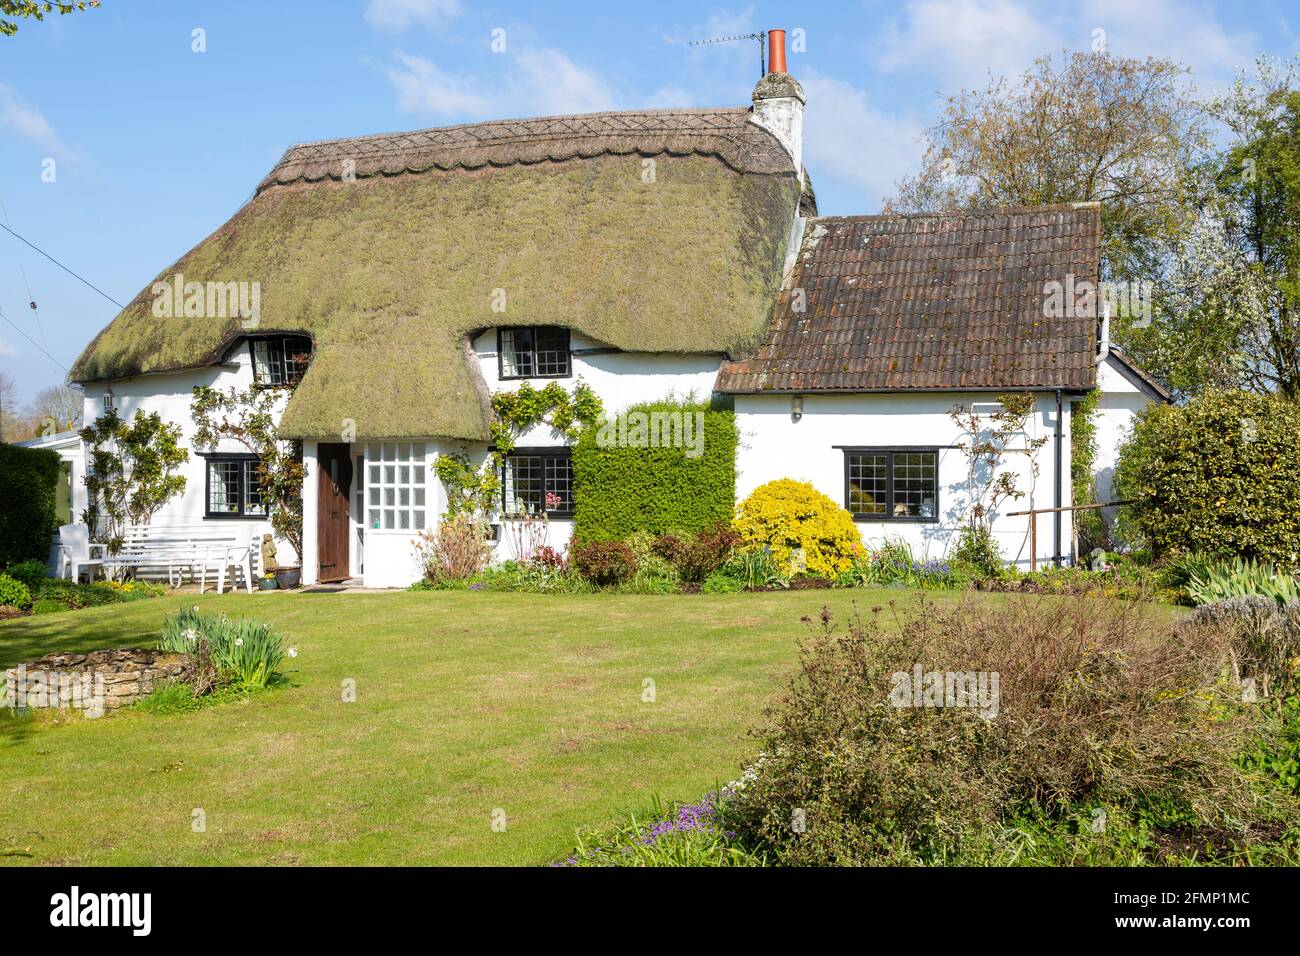 Jolie maison de campagne blanchie à la chaux, Cherhill, Wiltshire, Angleterre, Royaume-Uni Banque D'Images